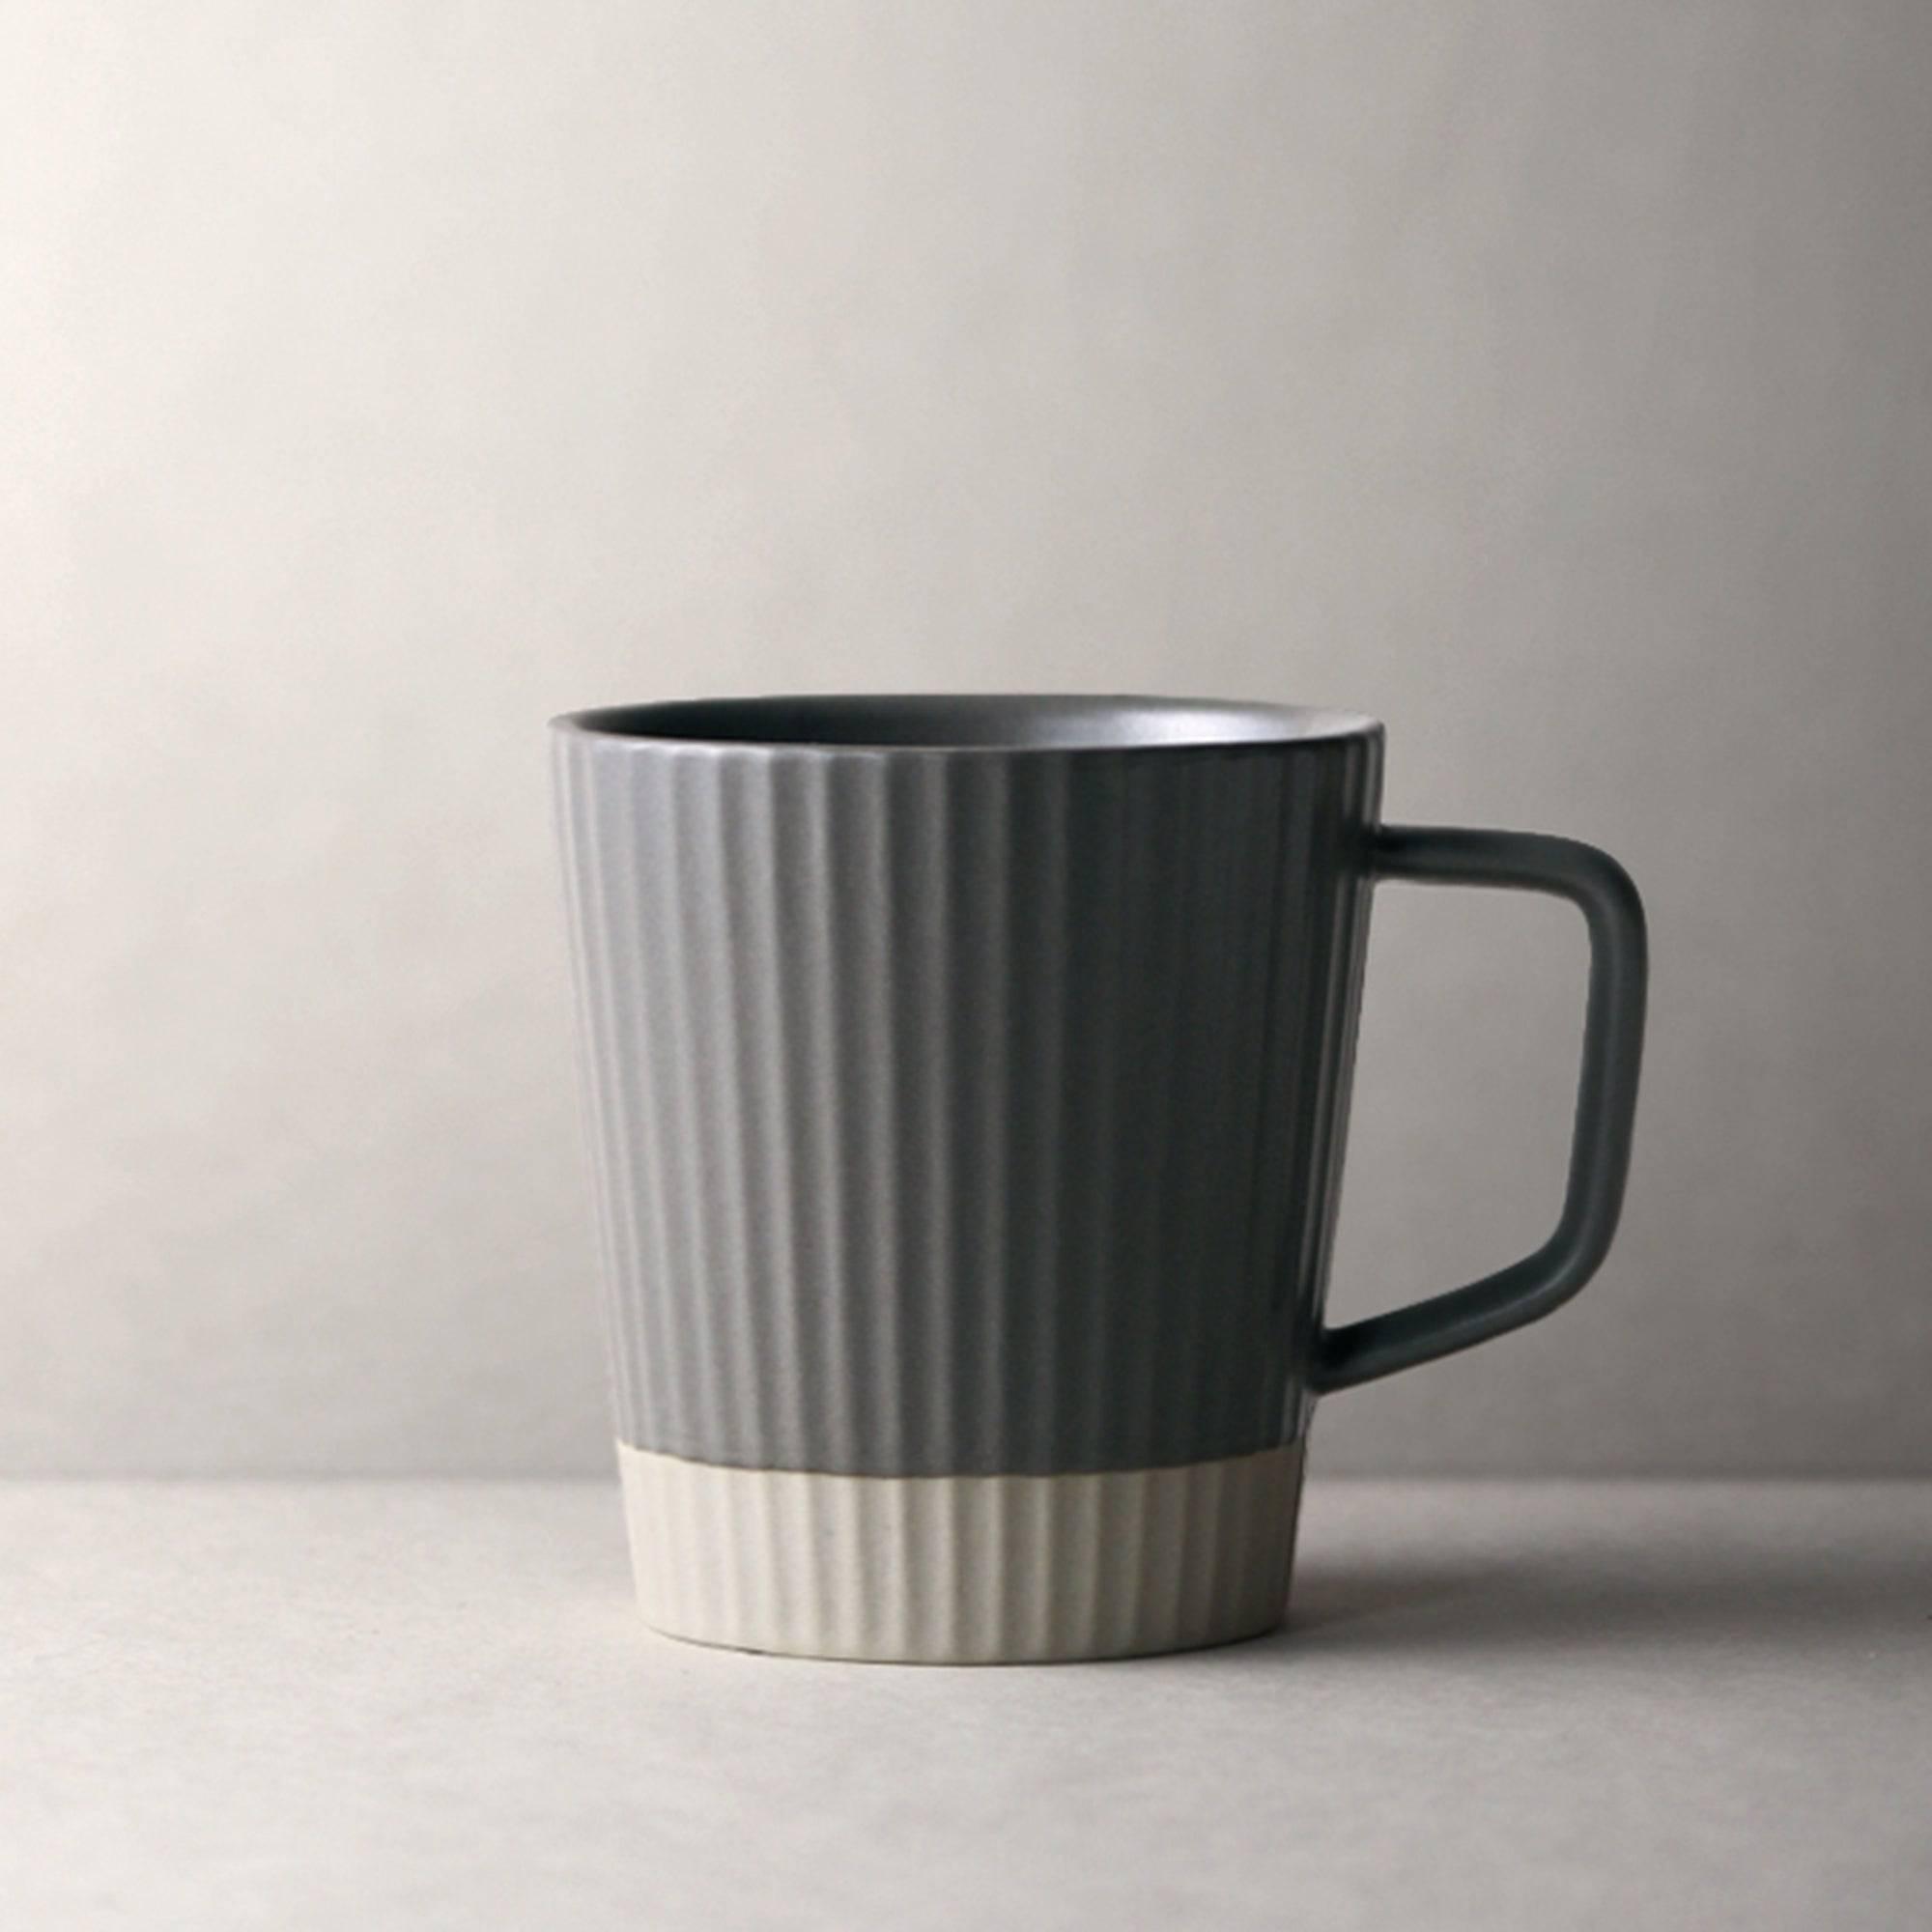 https://eunaliving.com/cdn/shop/products/scandinavian-handmade-minimalist-mug-set-eunaliving-4.jpg?v=1656838740